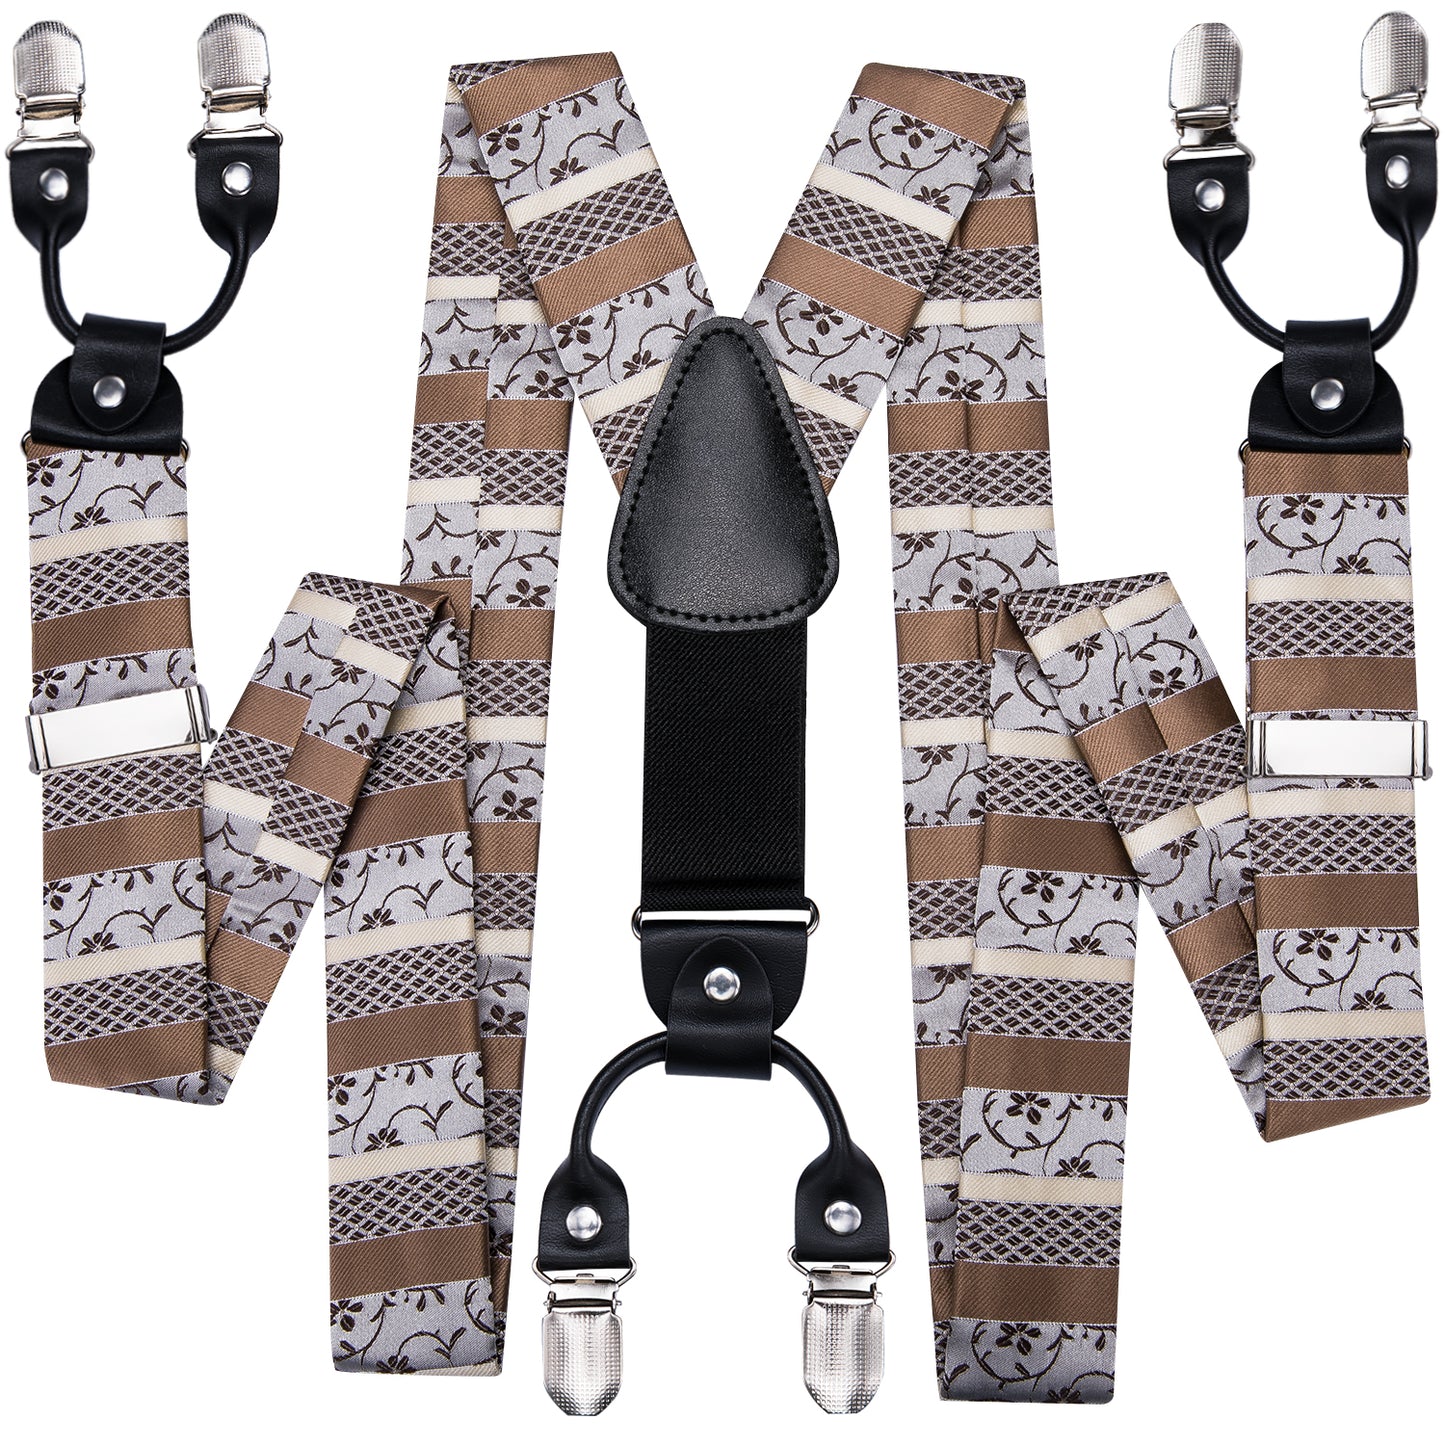 BD3019 Men's Braces Designer Clip Suspender Set [Light Choco]